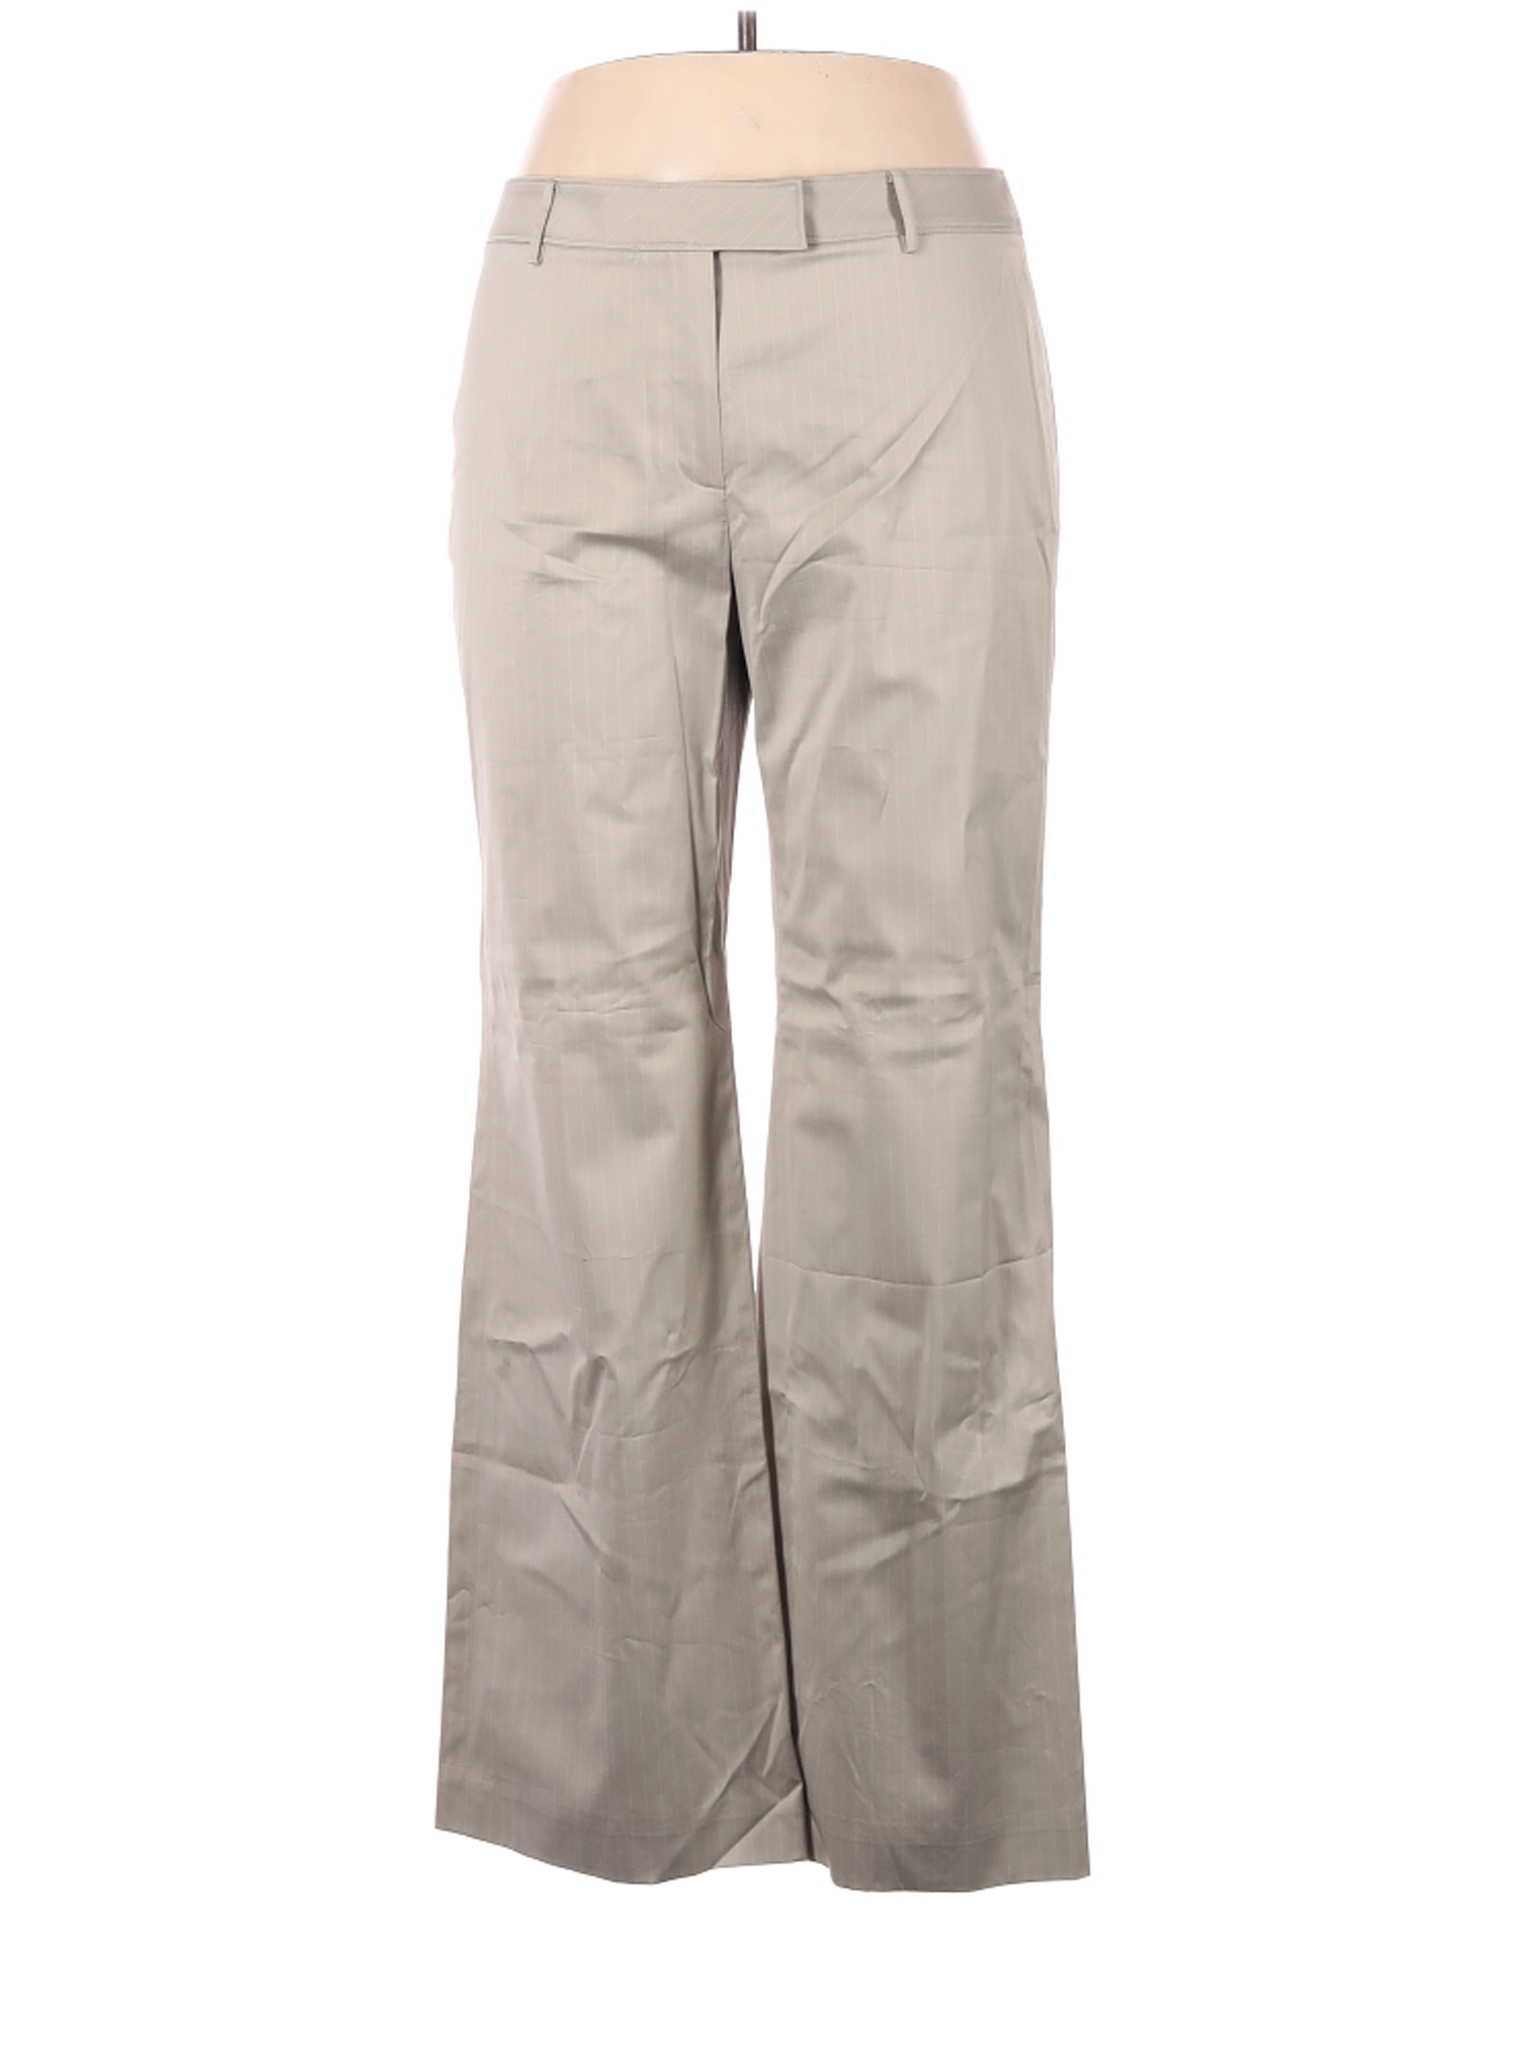 NWT Ann Taylor Women Brown Dress Pants 14 | eBay